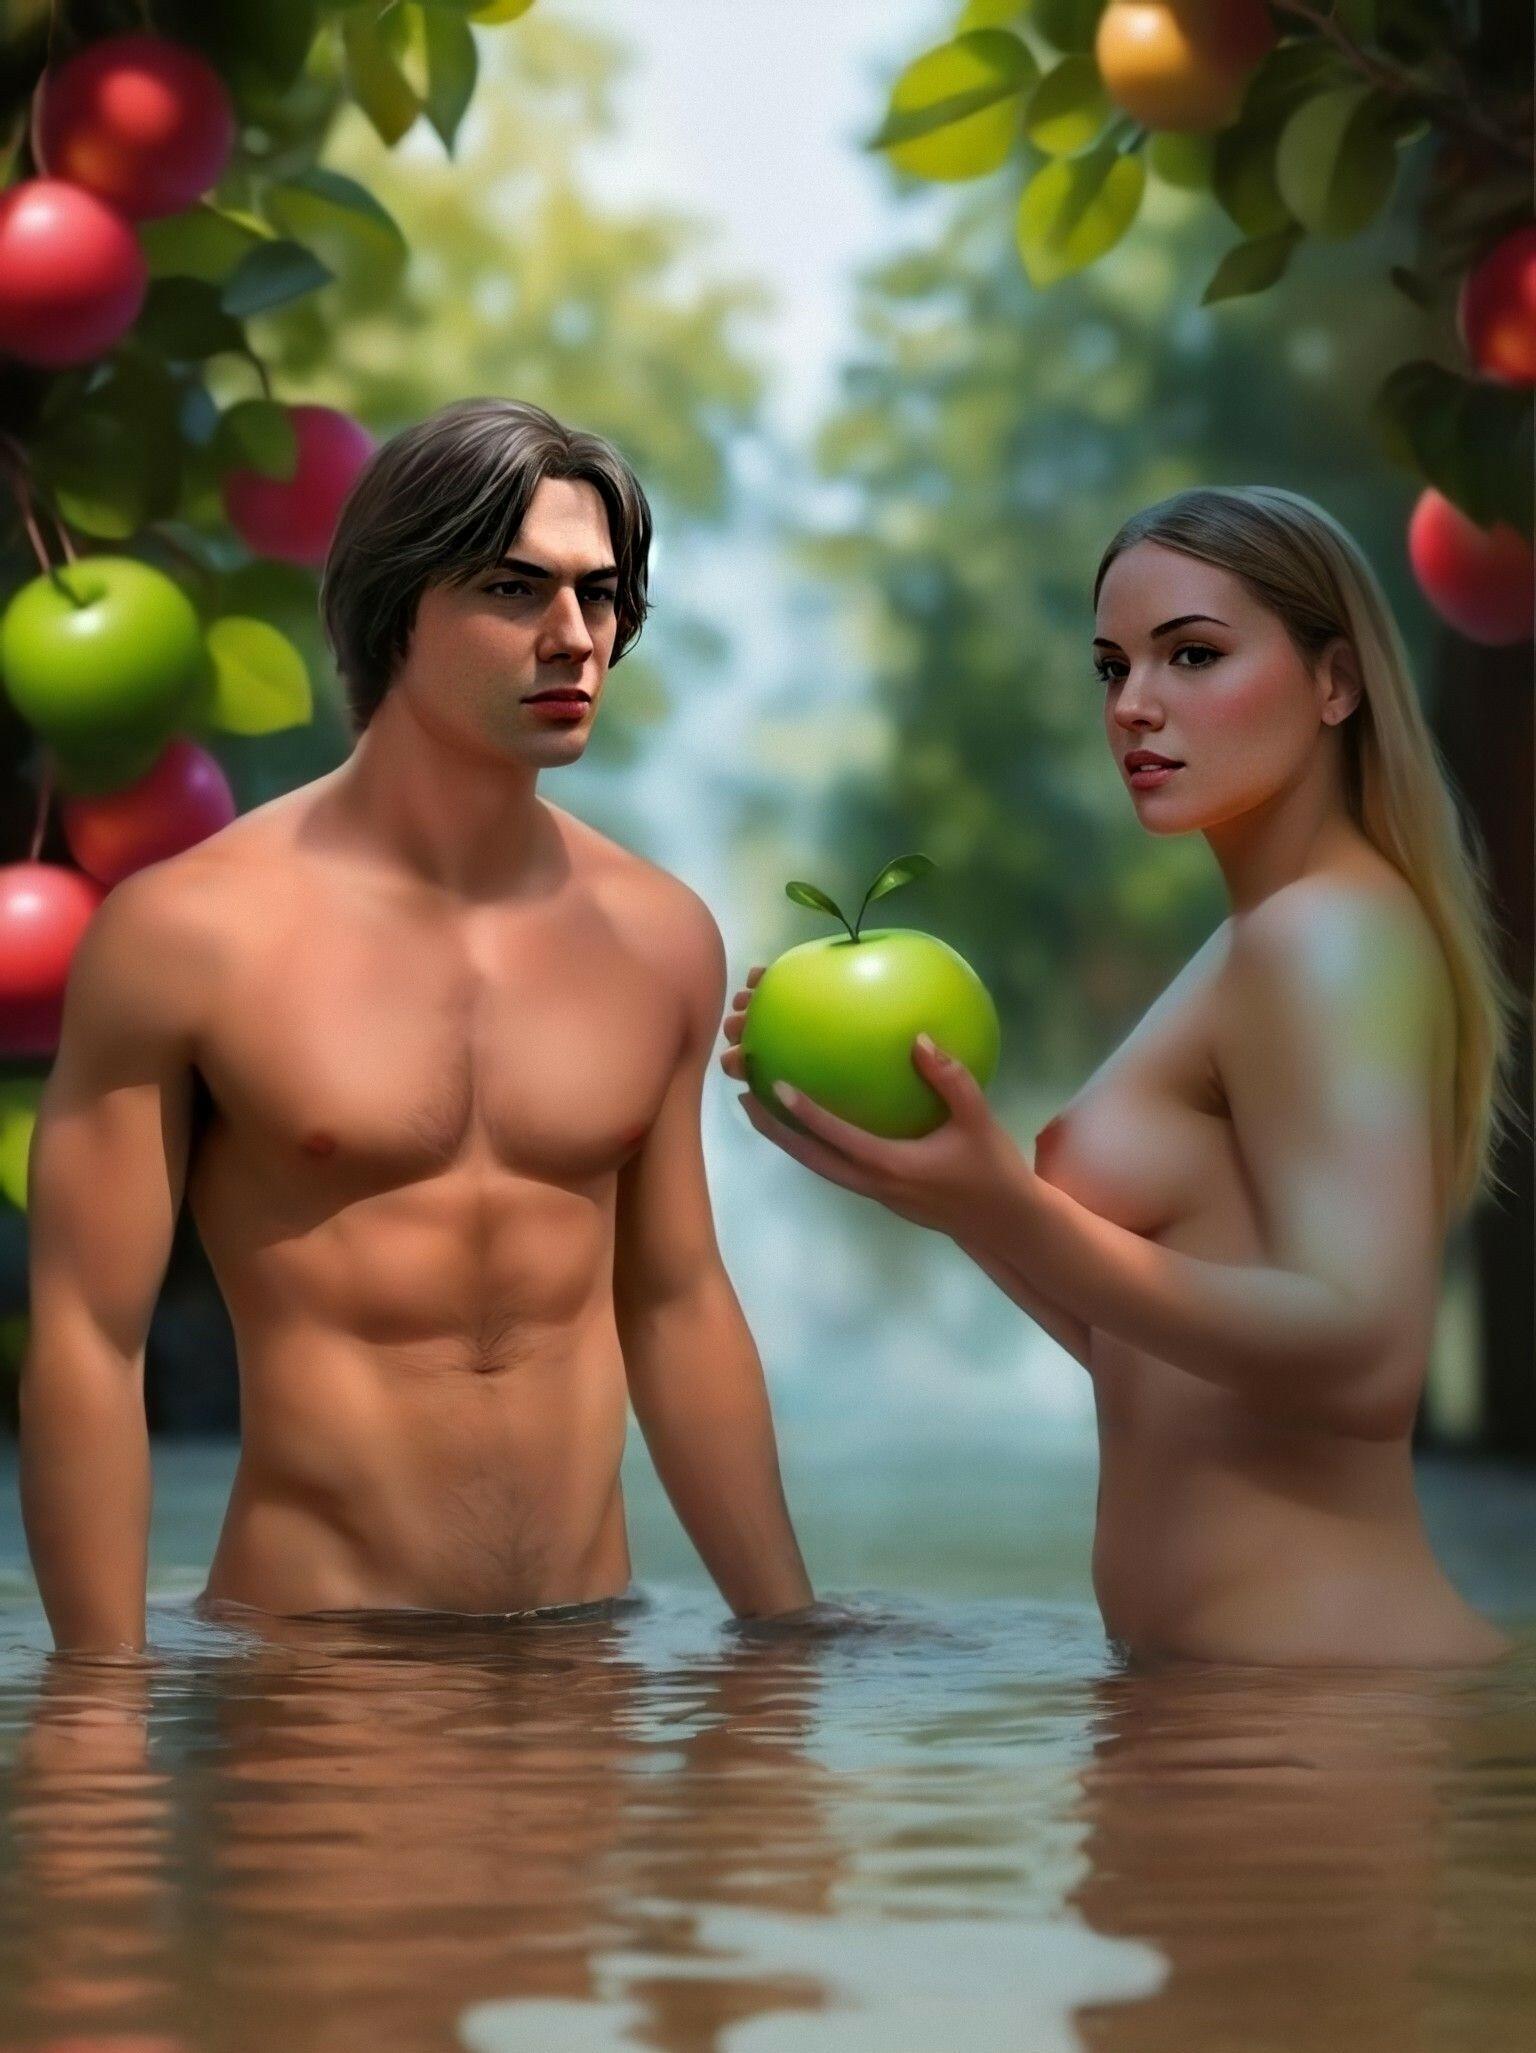 Яблоко съела Ева...